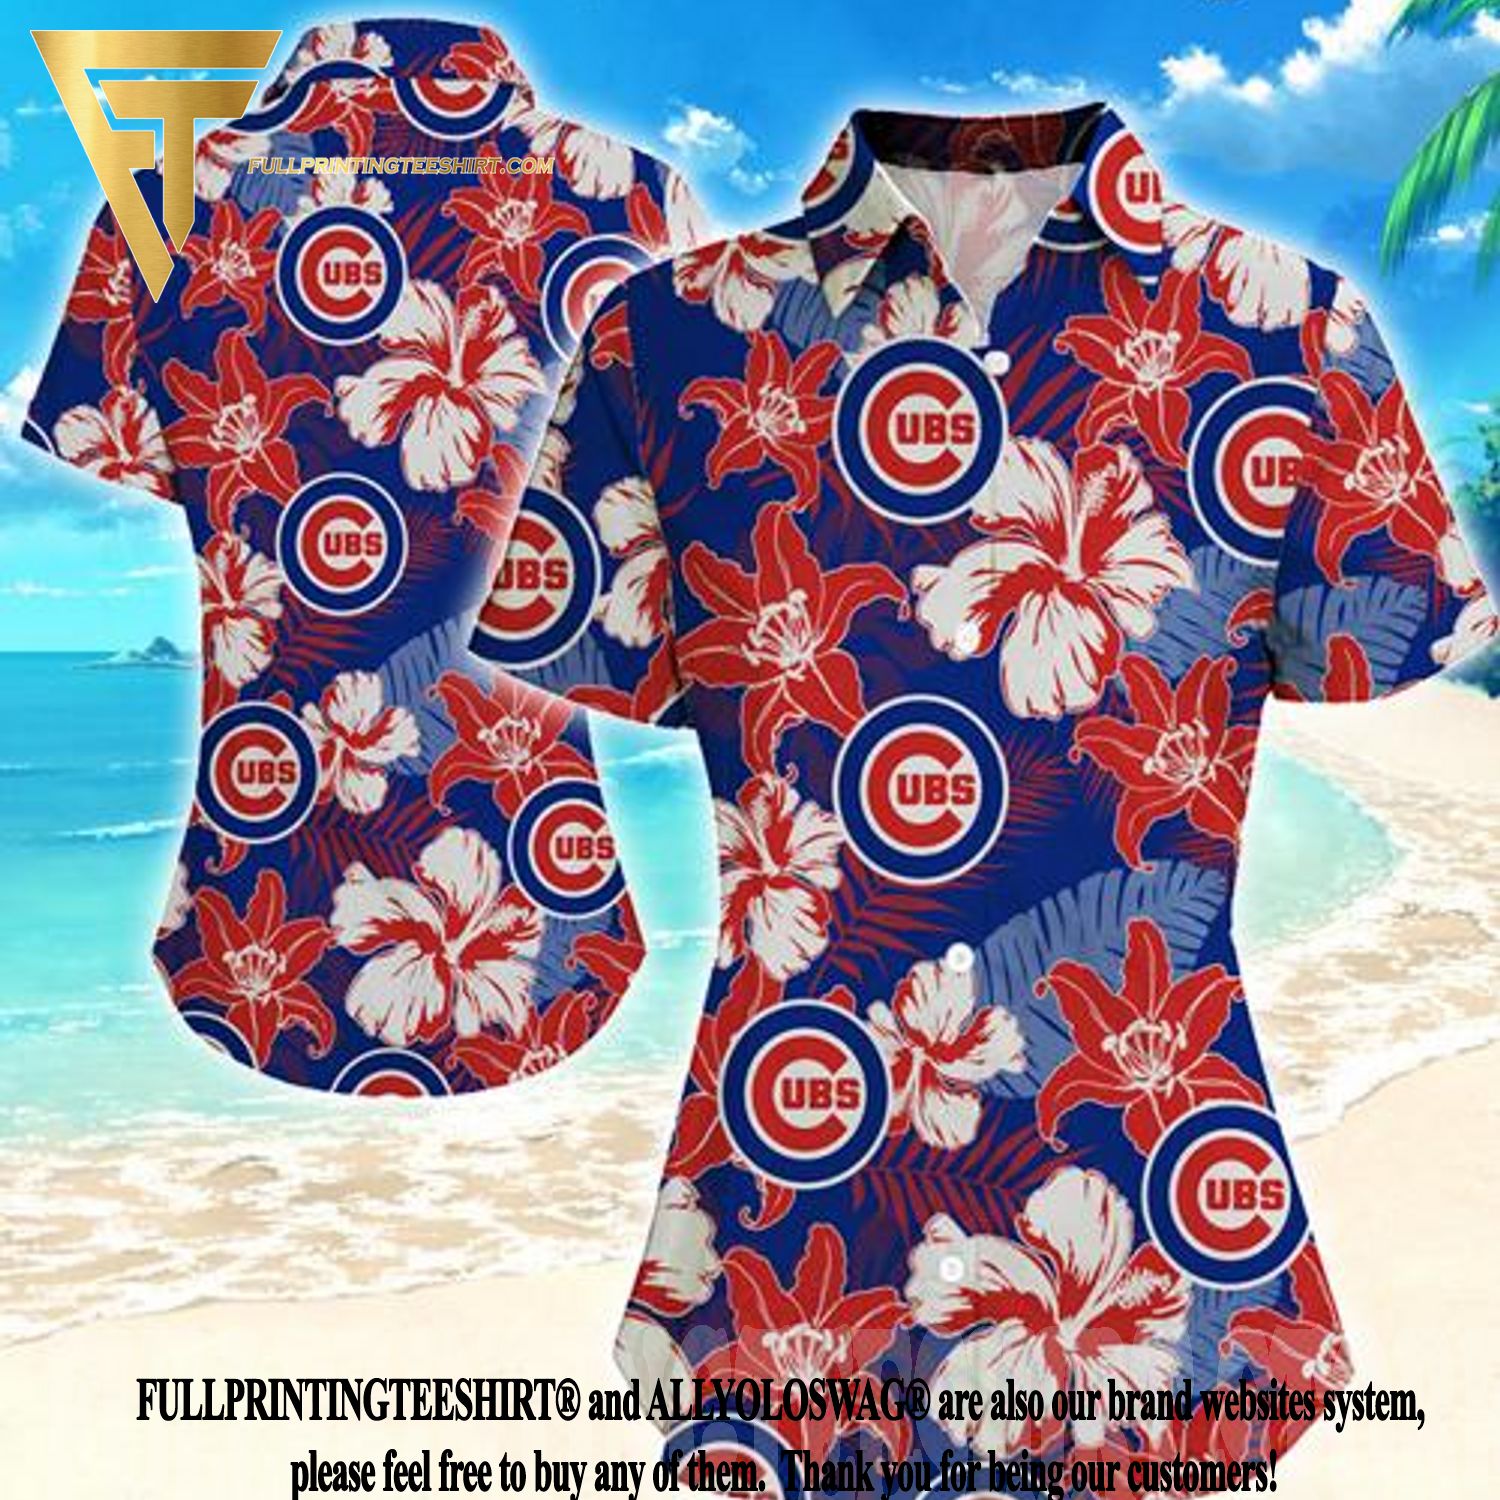 chicago cubs womens shirt